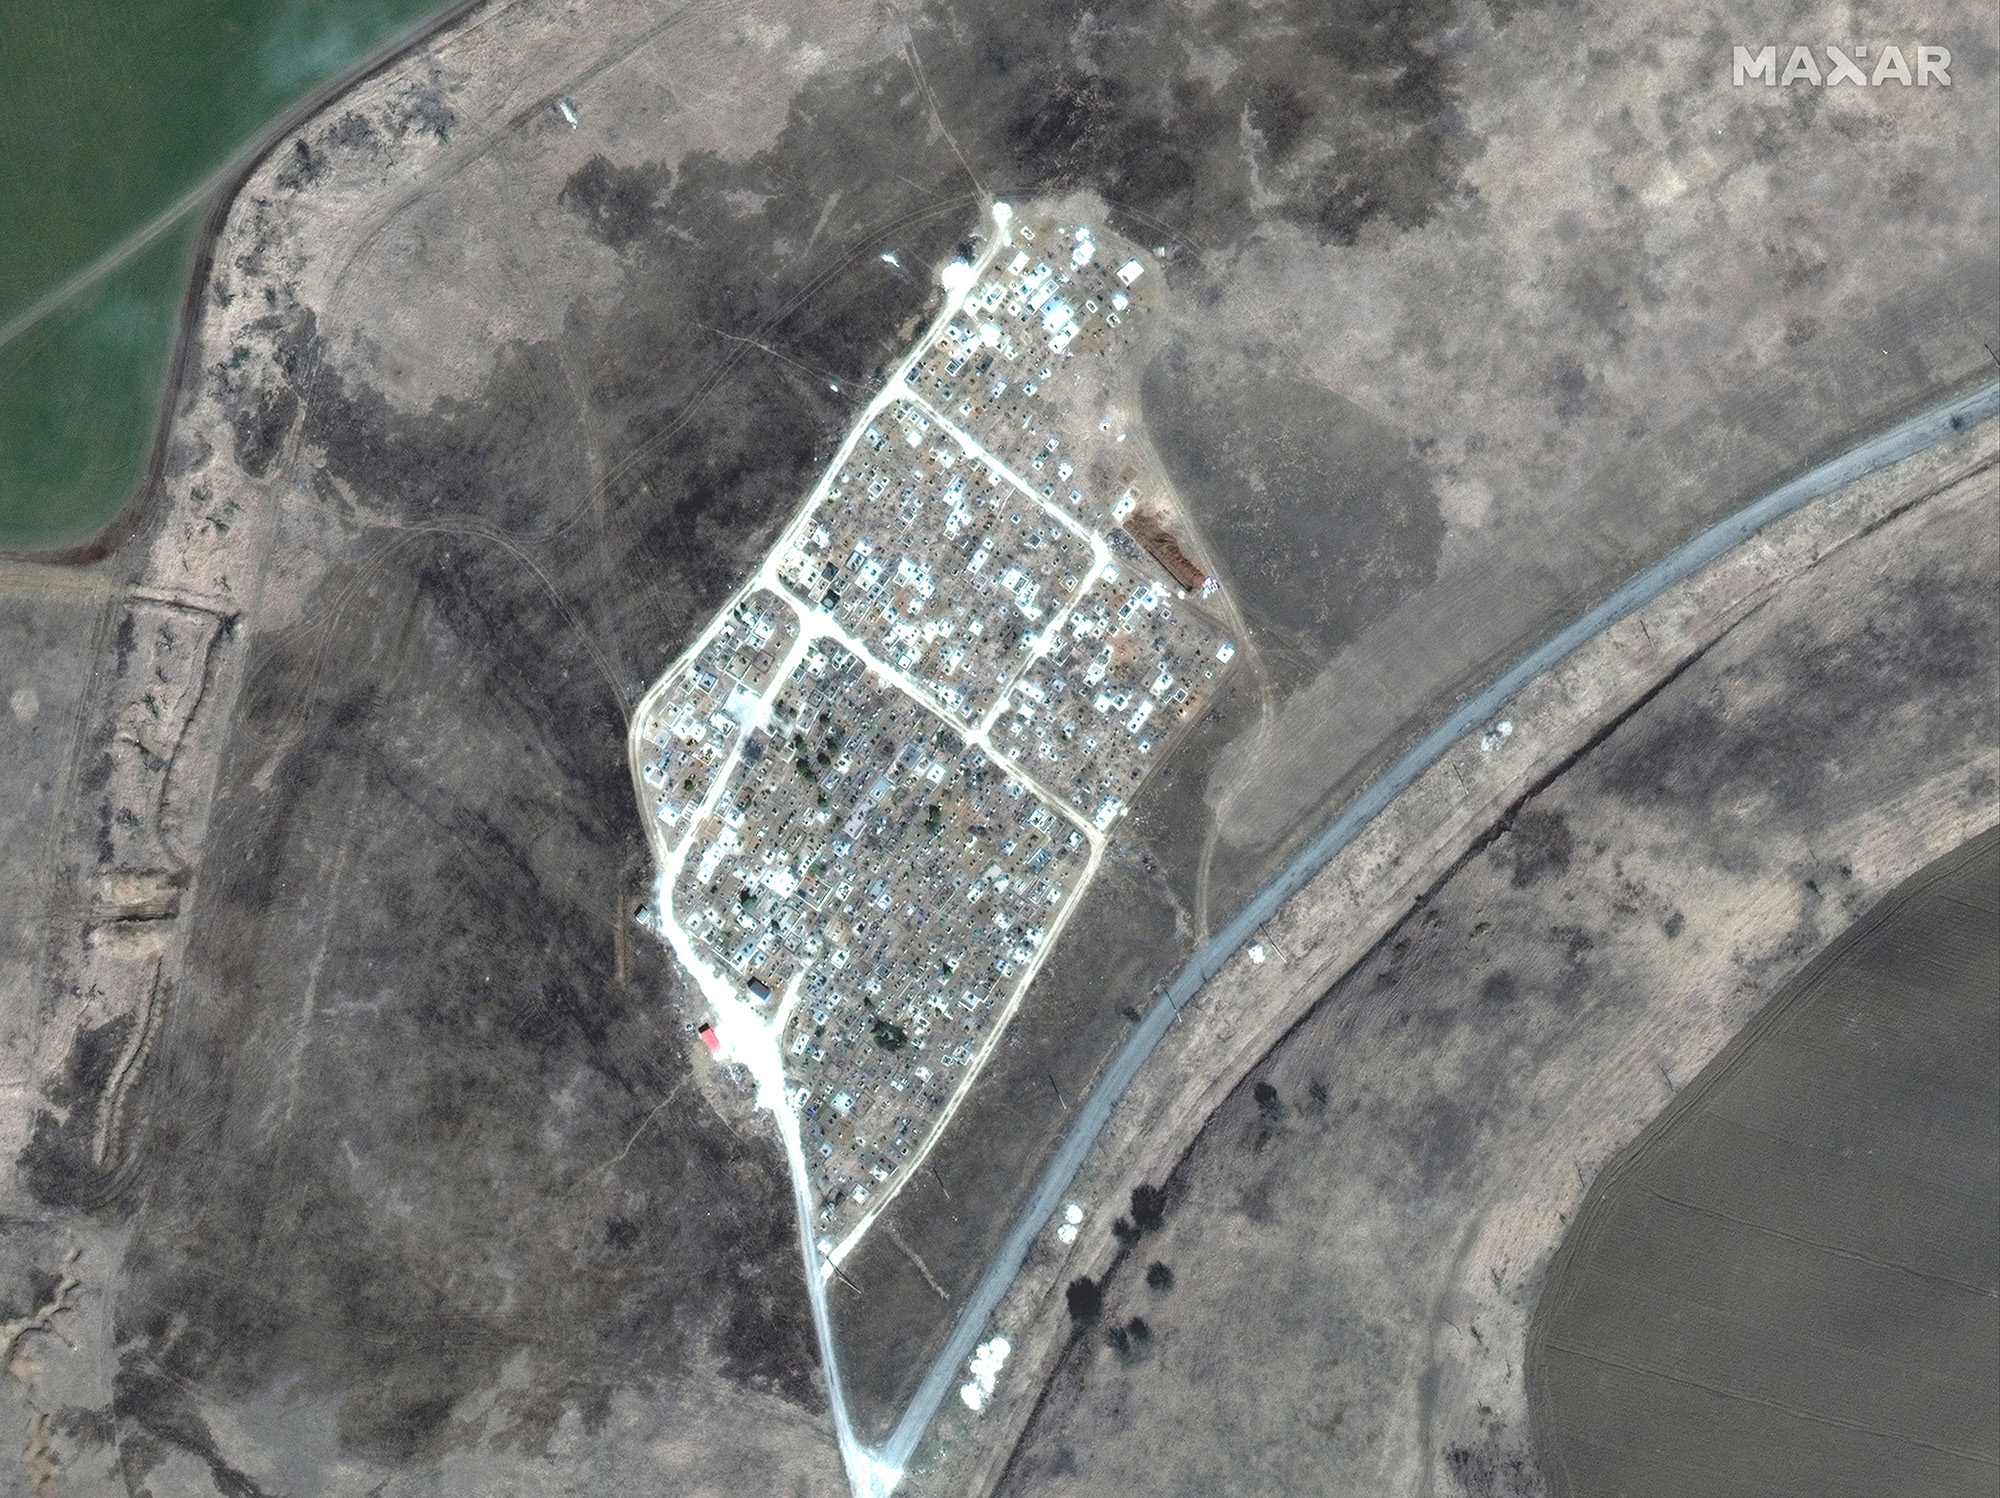 O imagine realizată prin satelit arată extinderea unor morminte noi la un cimitir din Vinohraden, lângă Mariupol, Ucraina, pe 29 martie.